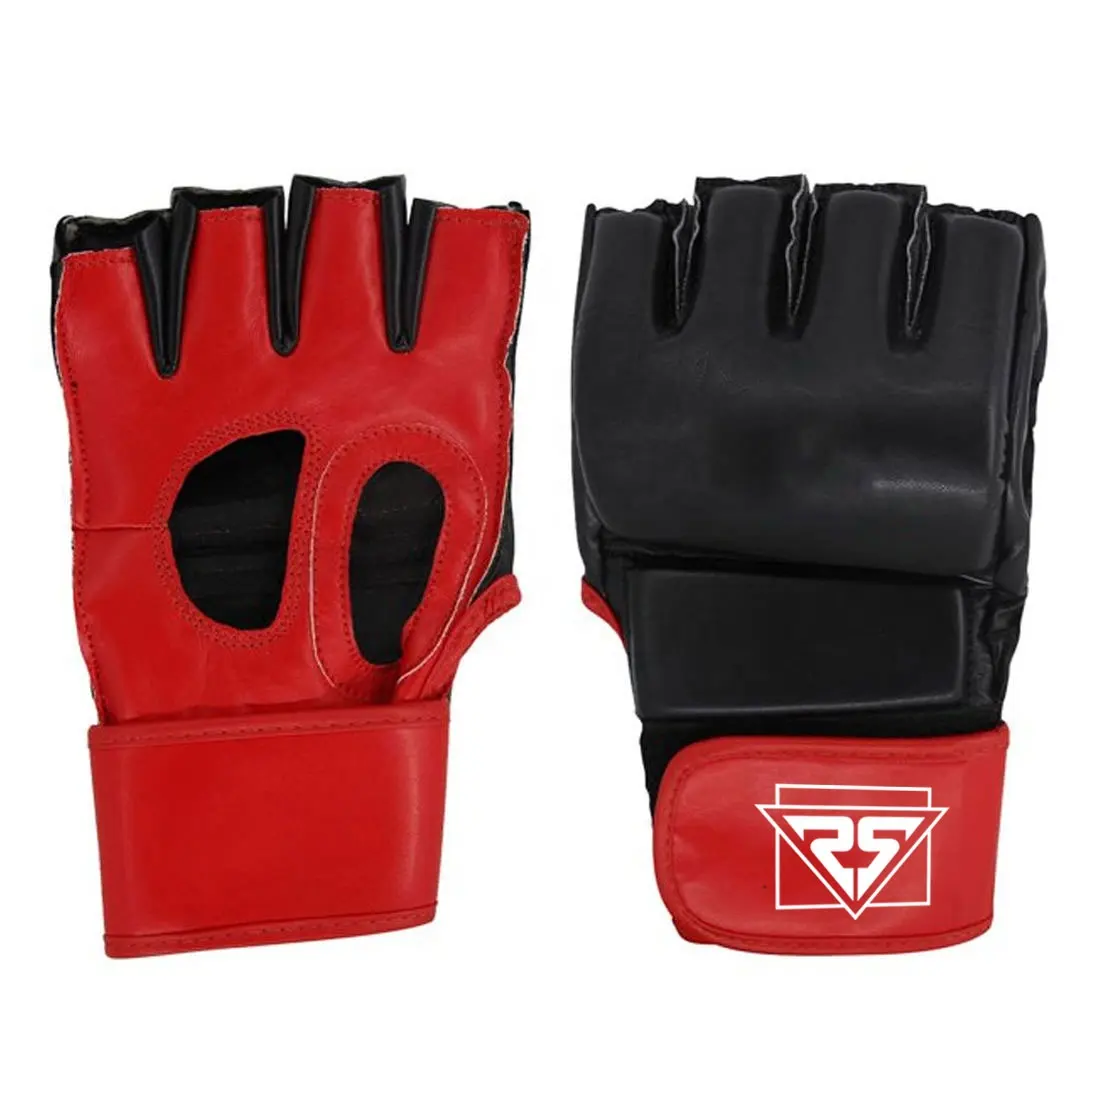 Profession elle MMA Fighting Leder handschuhe Hochleistungs-MMA-Handschuhe Custom Training Box handschuhe